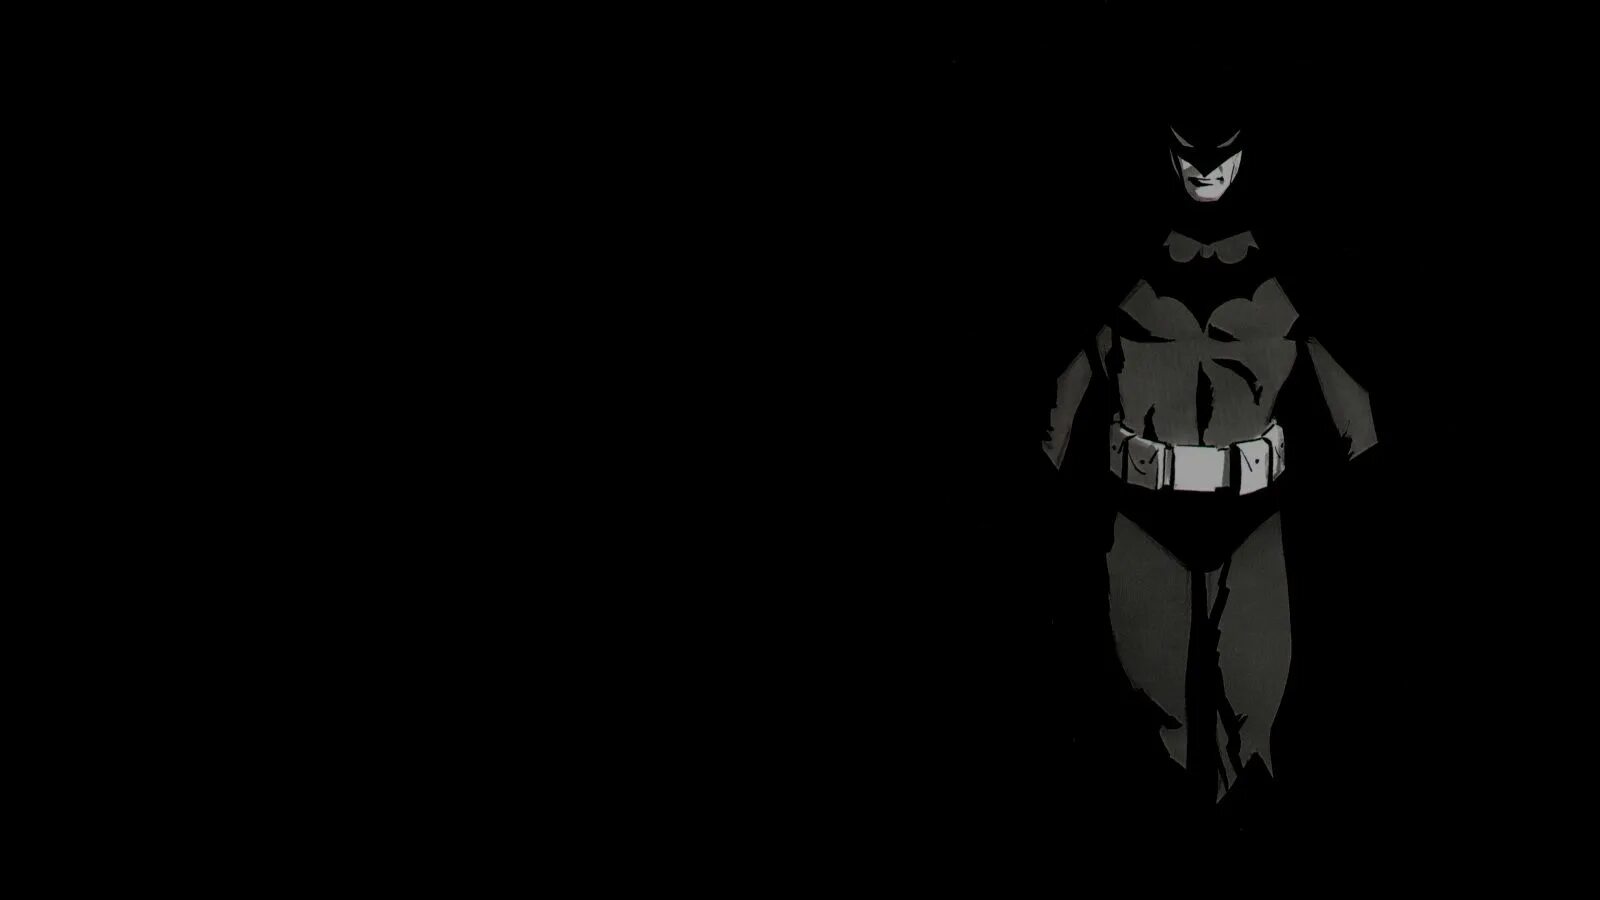 Черный Бэтмен. Бэтмен тень. Обои темные с Бэтменом. Бэтмен арт. Batman black